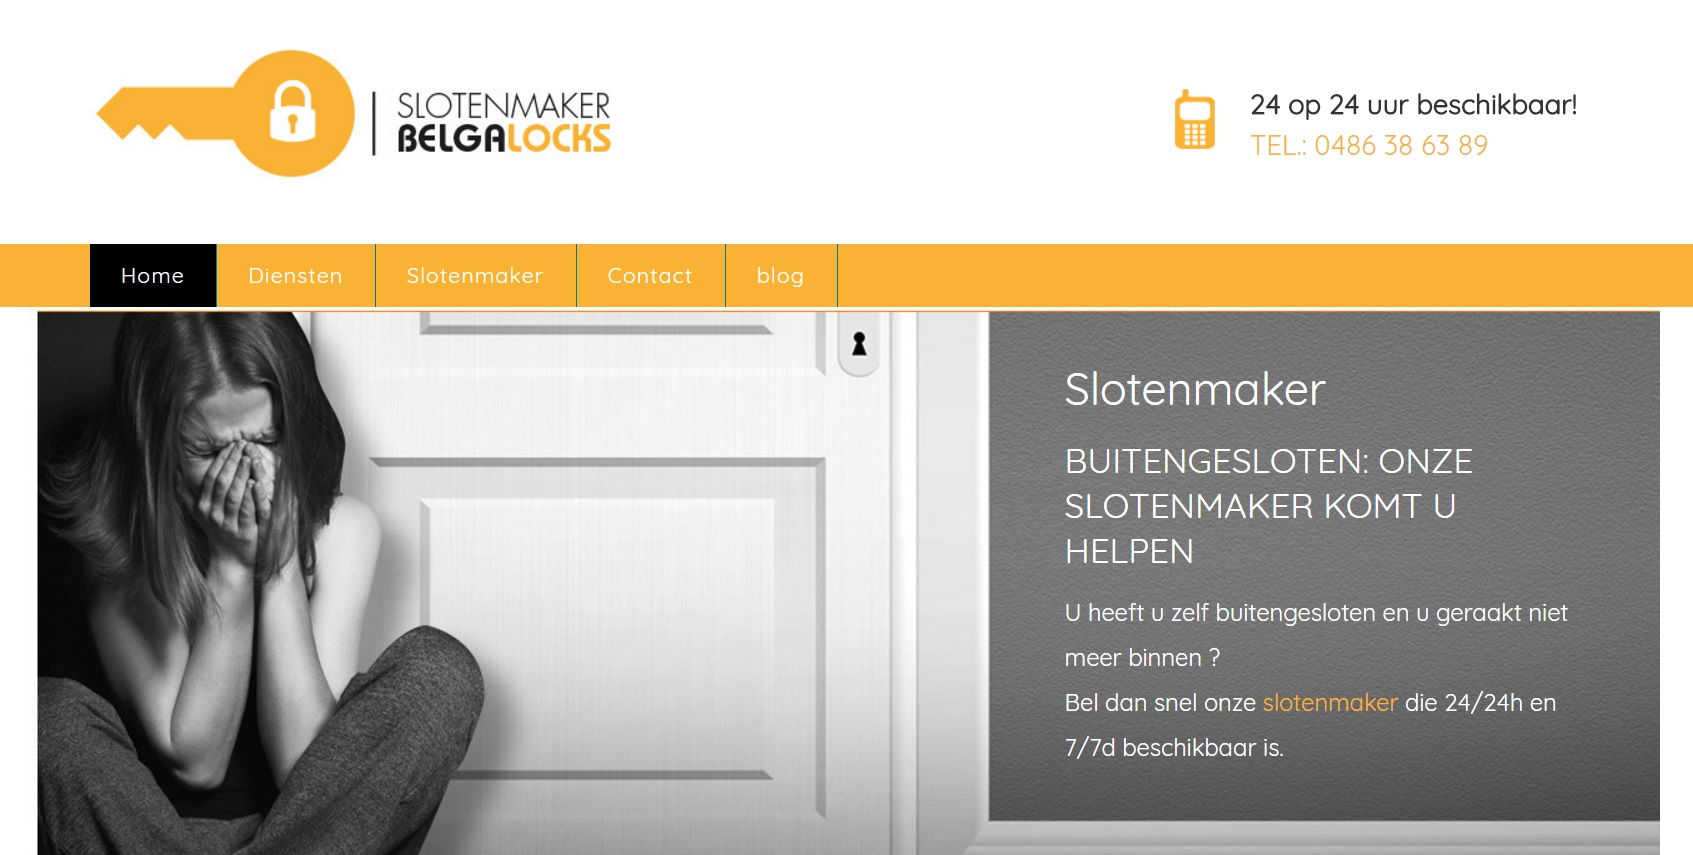 Slotenmaker Belgalocks